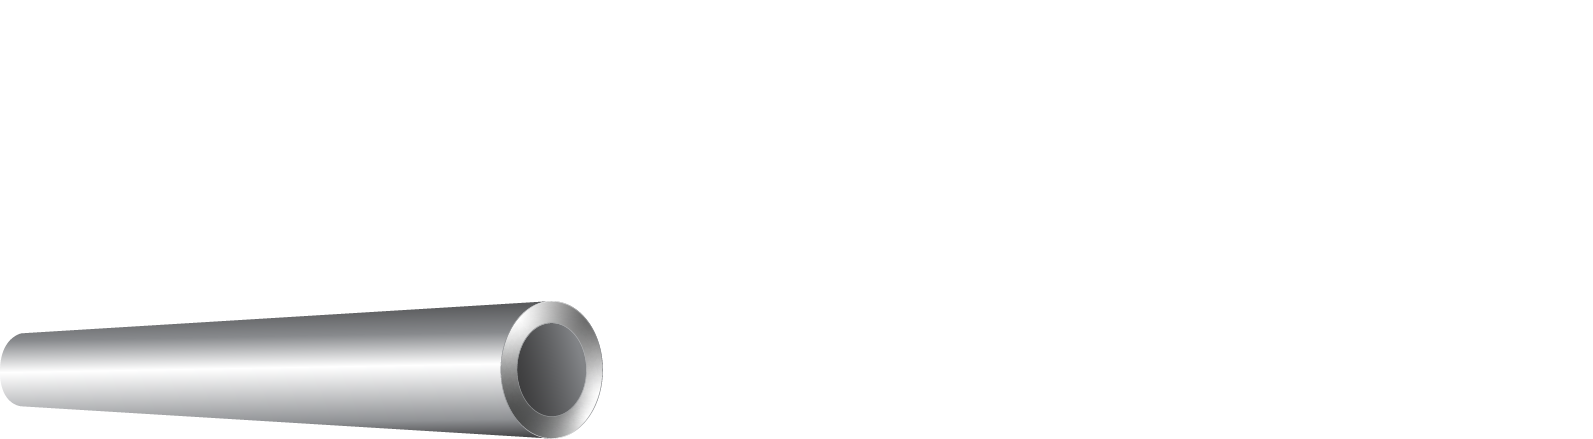 SVG MEK logo _ liggende_negativ